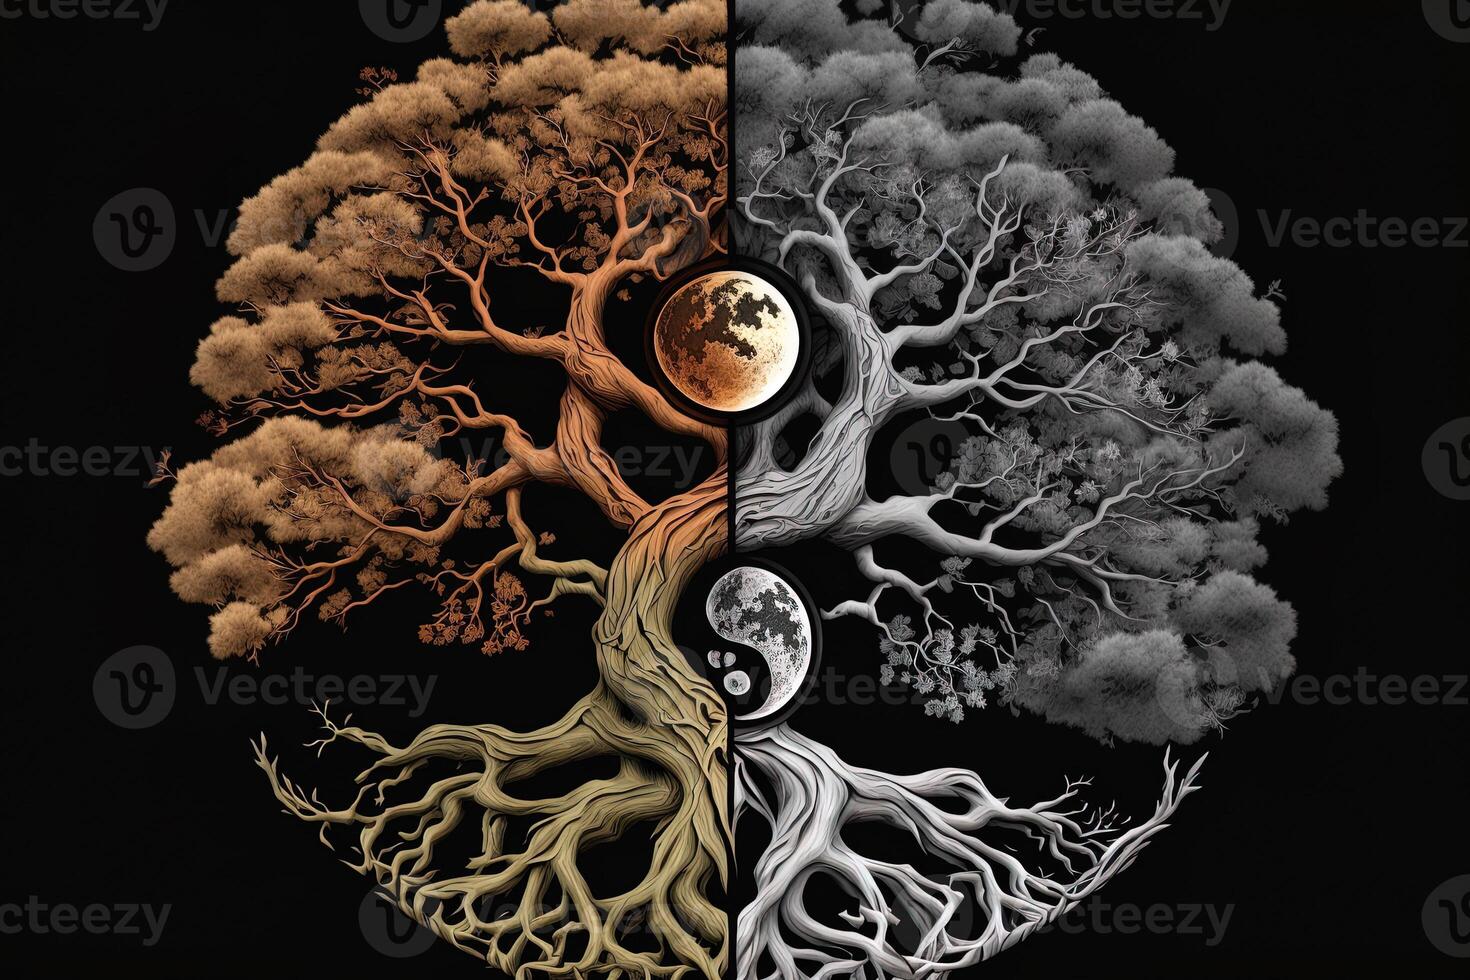 Ying yang concept of balance Yggdrasil tree of life norse mythology. Balance concept. photo